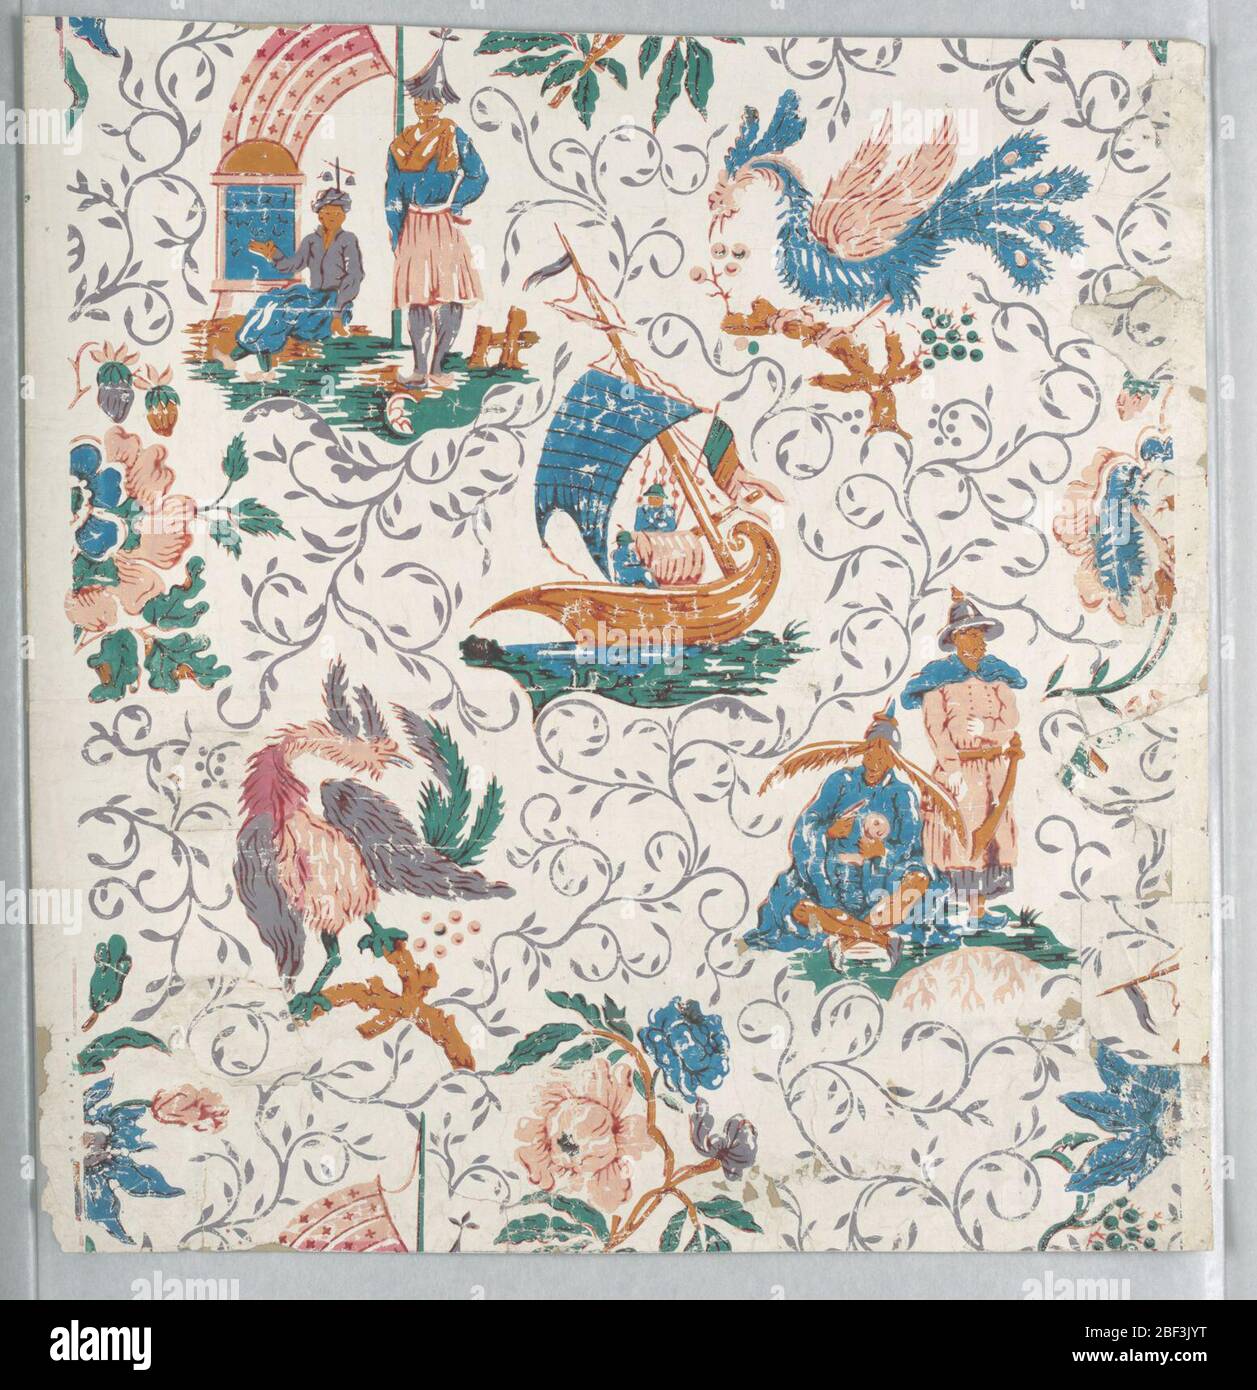 Seitenwand. Vertikales Rechteck. Chinoiserie Design von acht Motiven, drei mit menschlichen Figuren, zwei mit einer Art phoenix, und drei mit Blumen; weißes Feld mit schlanken blau-grauen Blättern bedeckt. Gedruckt in Rot, Blau, Grün und neutralen Orangen auf weißem Grund. Stockfoto